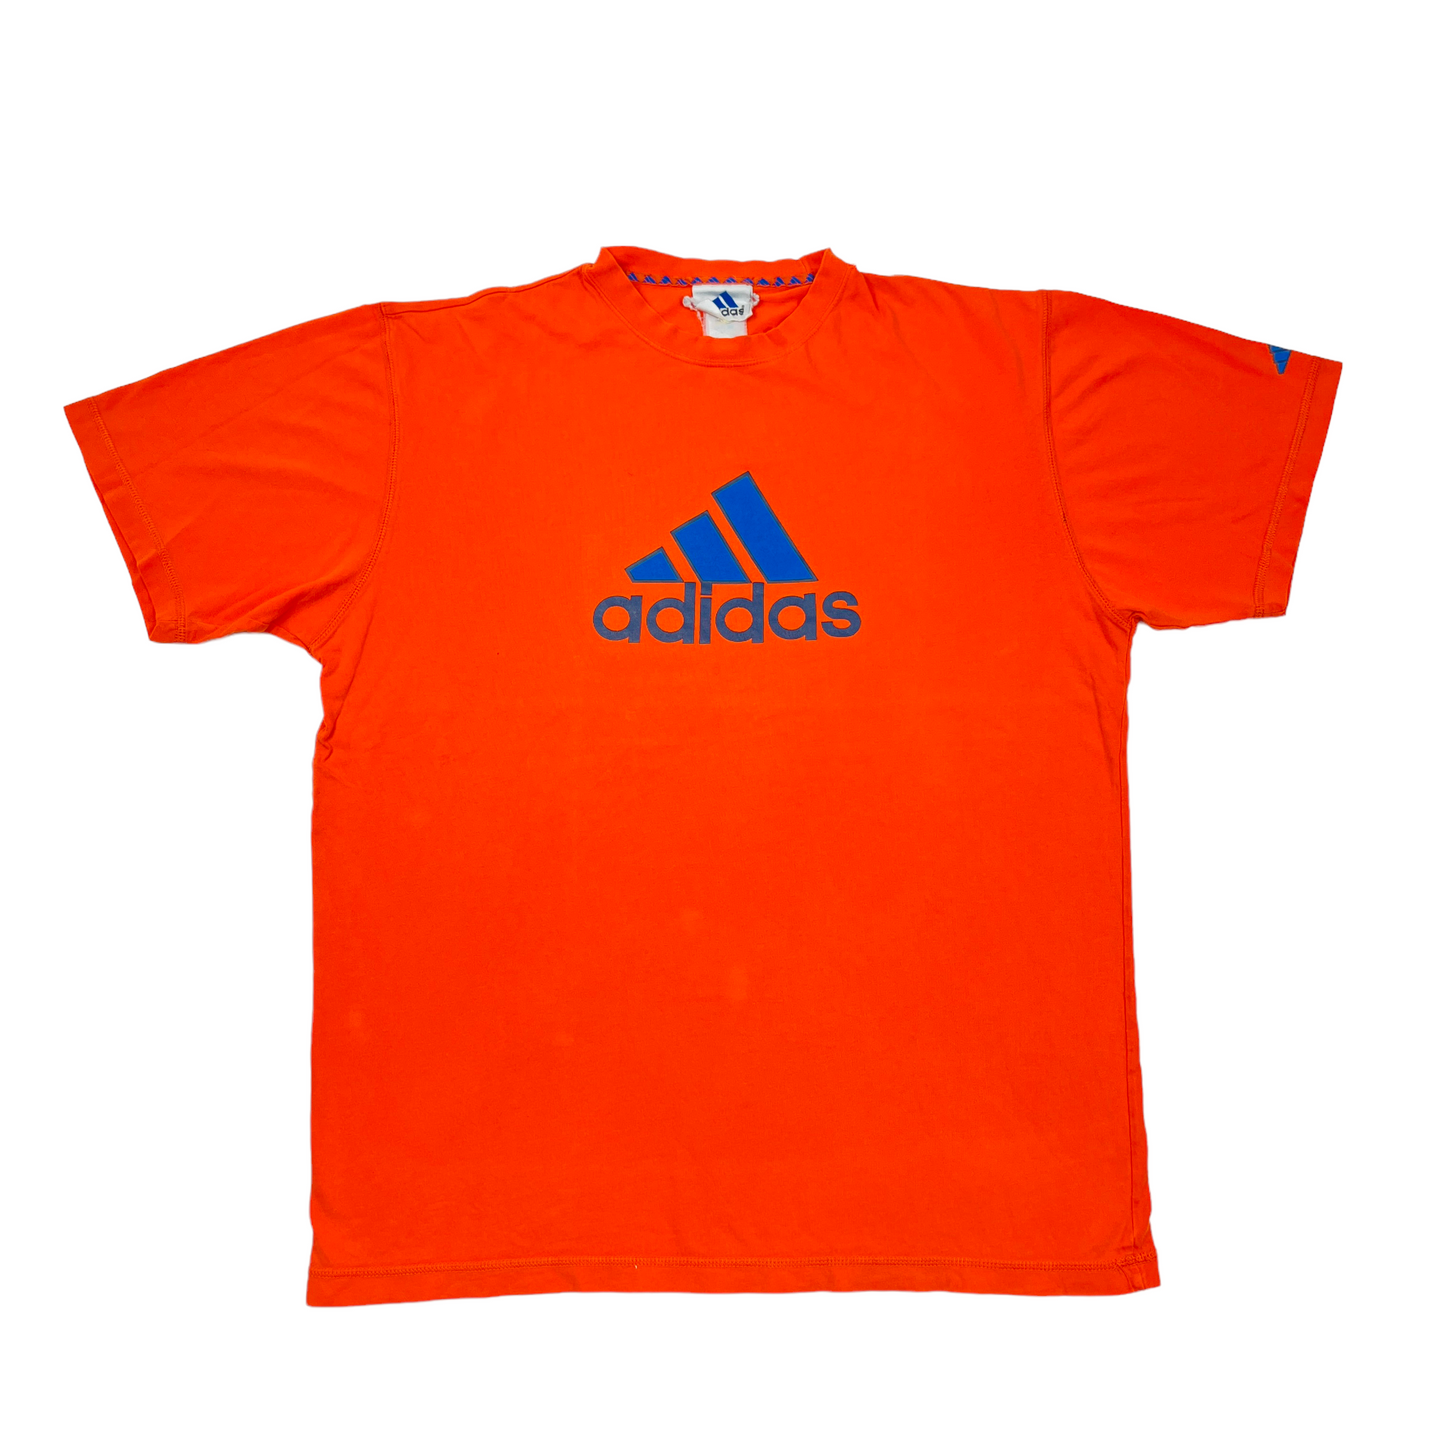 01448 Adidas 90s Tshirt